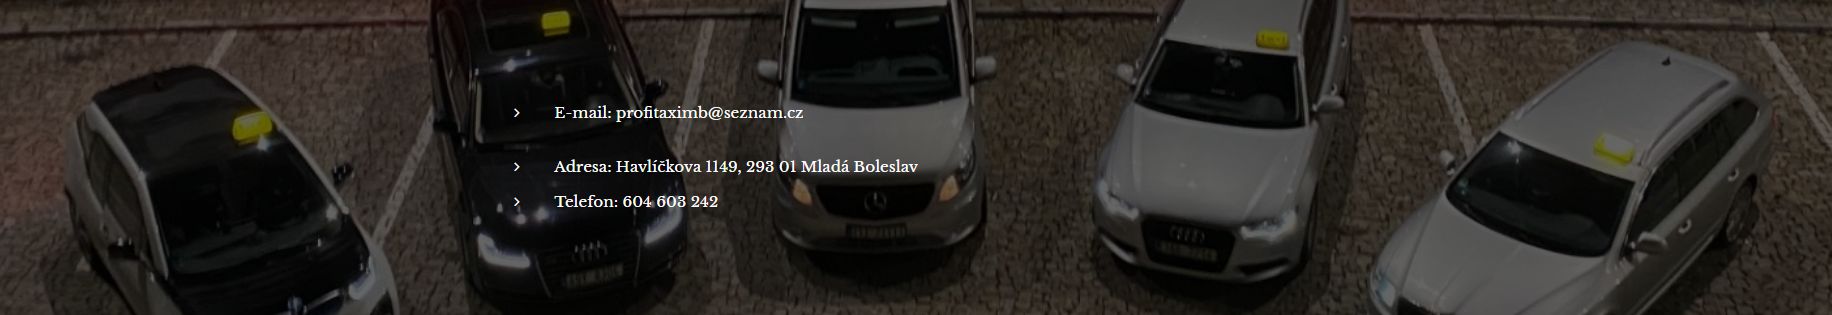 TAXI - PROFI TAXI MB - taxislužba - Taxi Mladá Boleslav